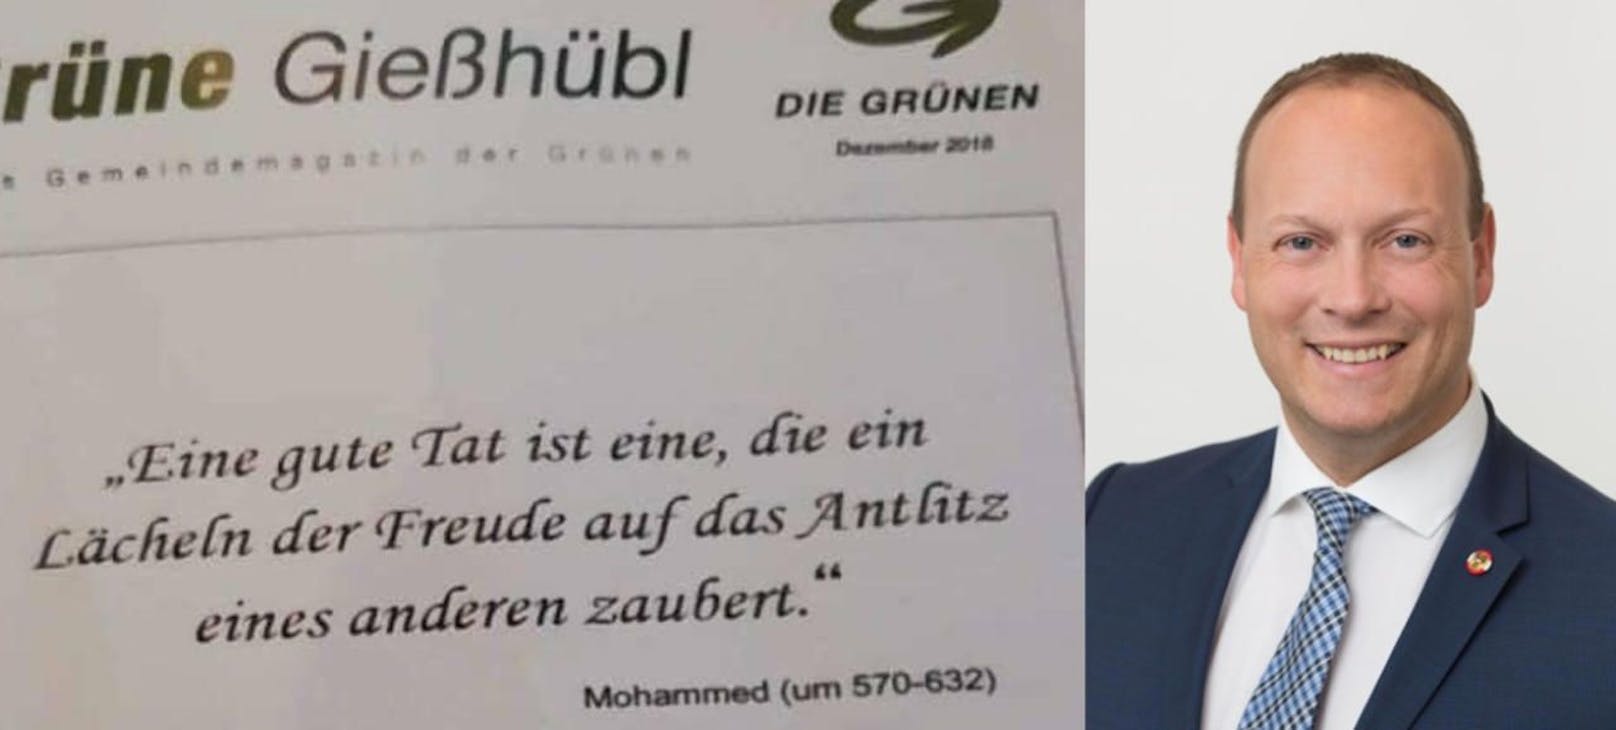 FP-Ärger über Mohammed-Zitat in Grünen-Zeitung